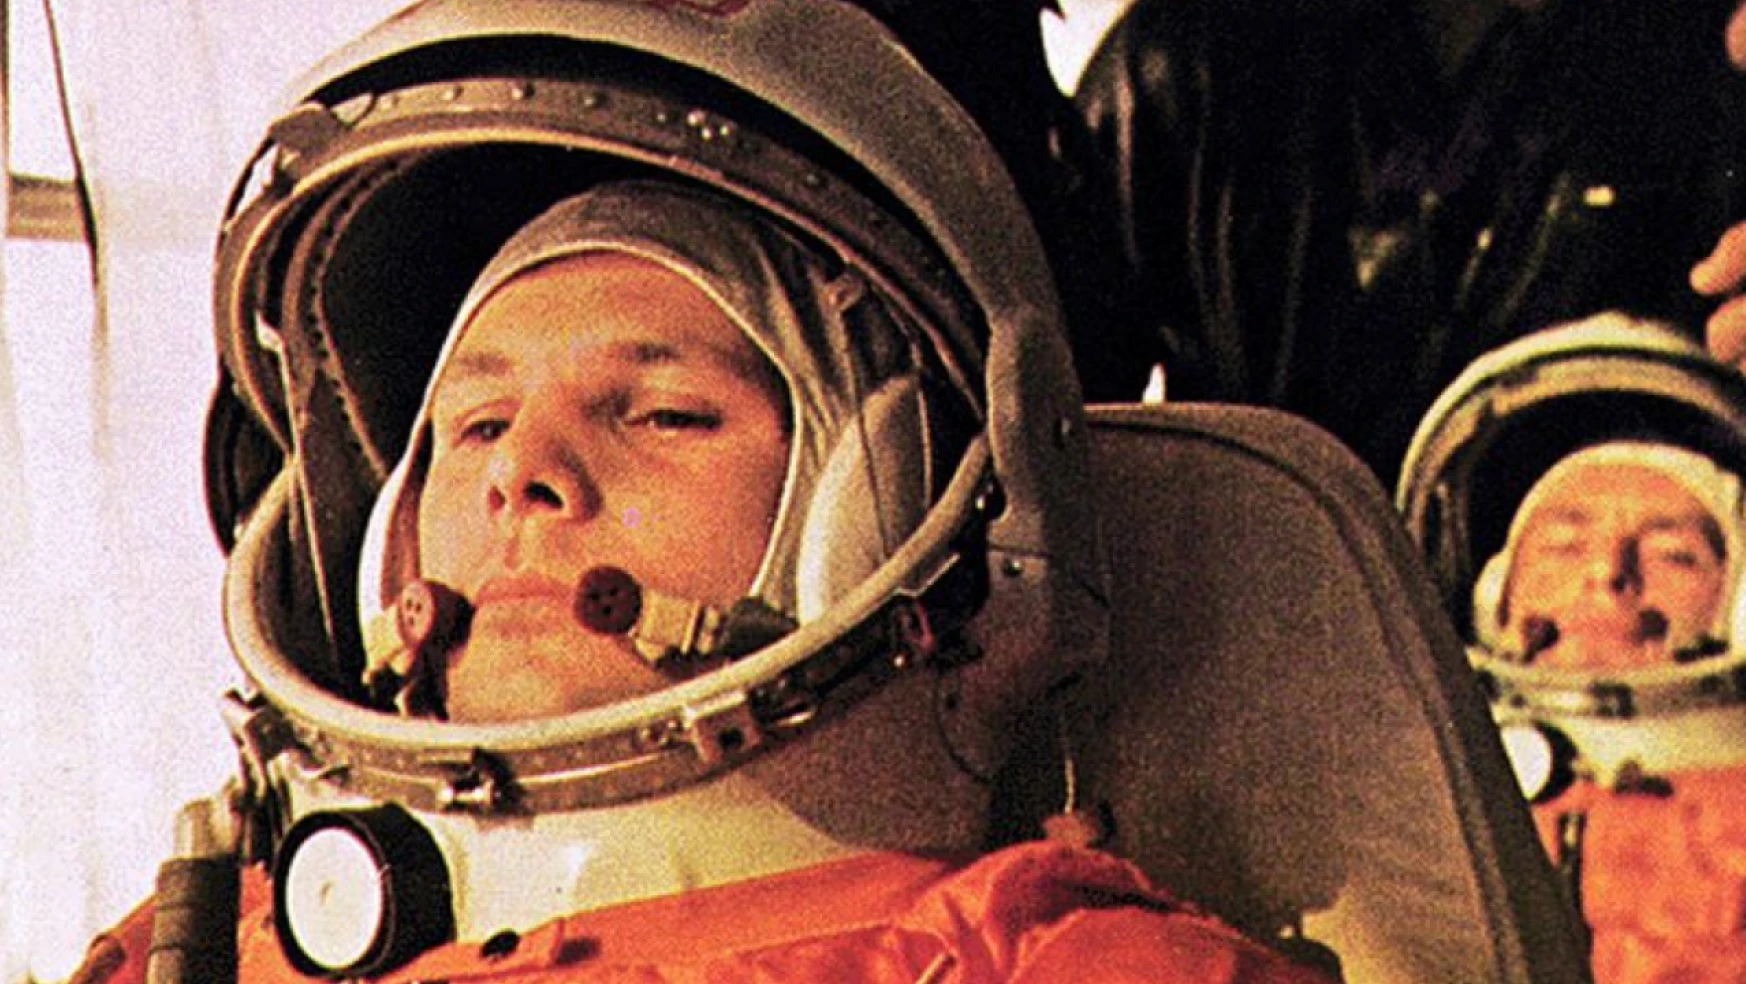 İnsanlık tarihindeki ilk uzay yolculuğu: Yuri Gagarin'in efsanevi uçuşu